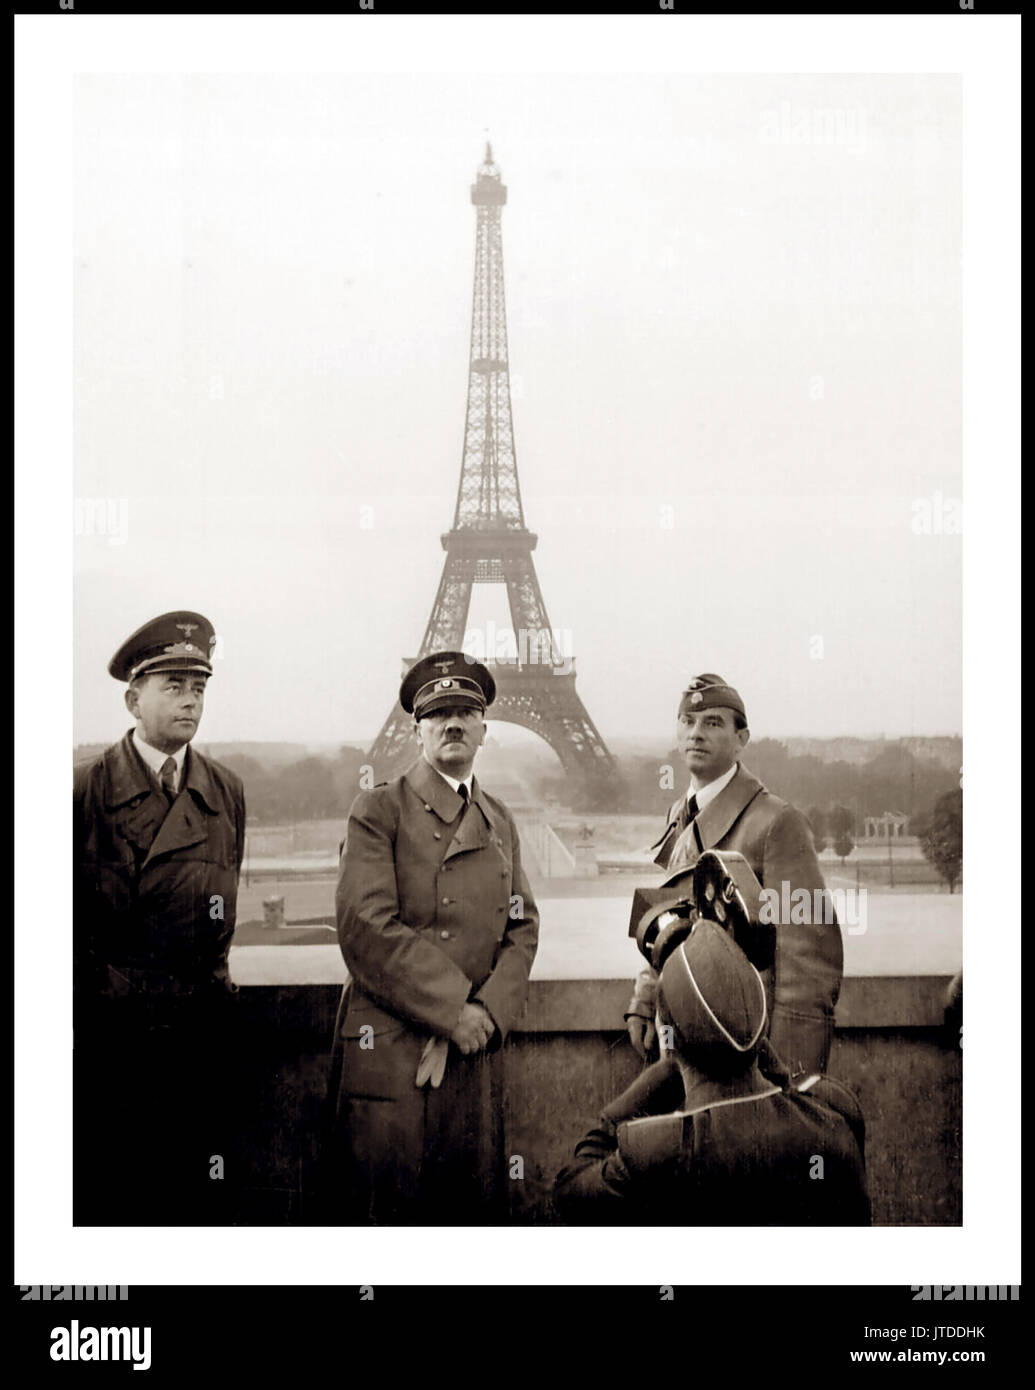 ADOLF HITLER Adolf Hitler, la propagande de l'occupation de Paris qui pose pour la propagande nazie, images de film avec Albert Speer, à gauche, et le sculpteur Arno Breker, 23 juin 1940 à droite, avec l'Allemagne nazie après l'occupation de Paris France Banque D'Images